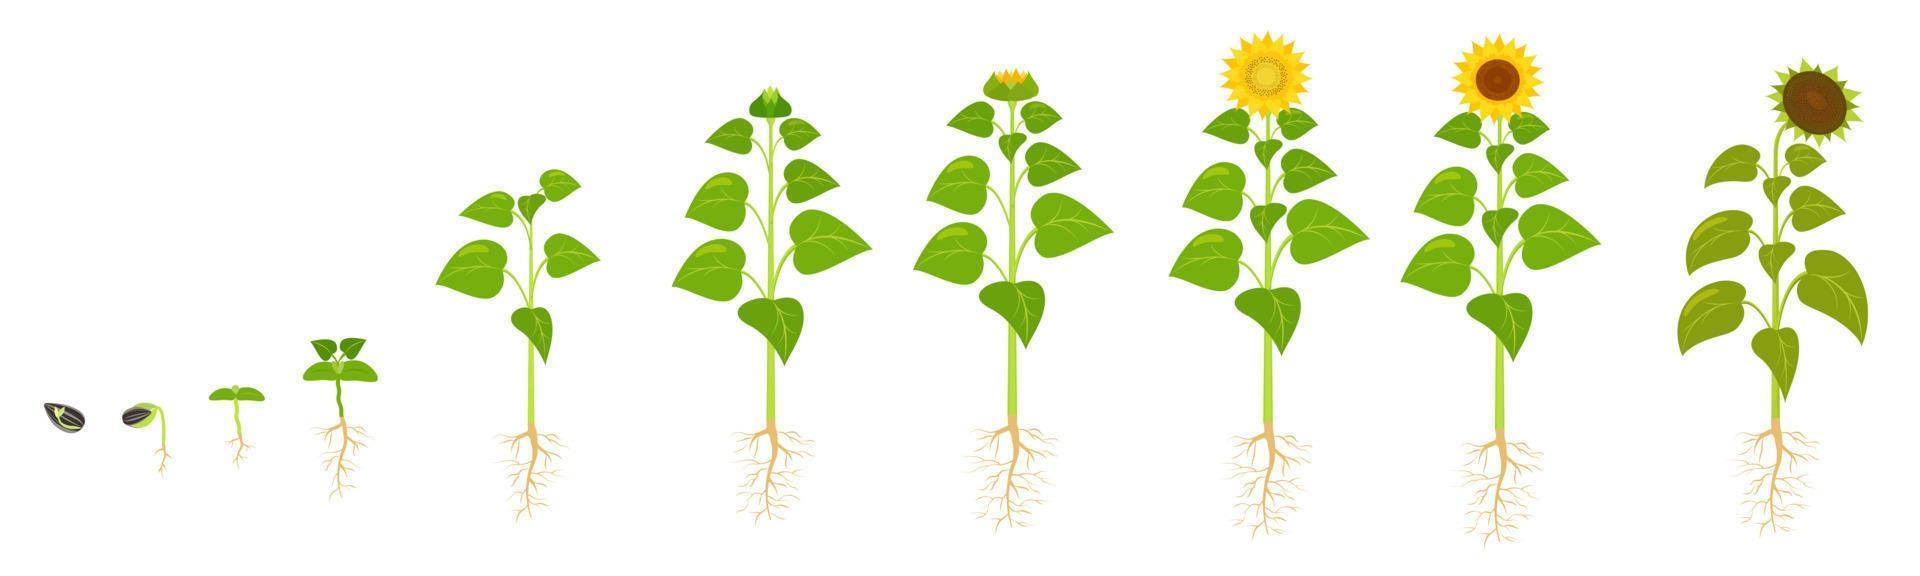 cycle de croissance du tournesol. germination des graines. la séquence des stades de développement des fleurs en agriculture. vecteur